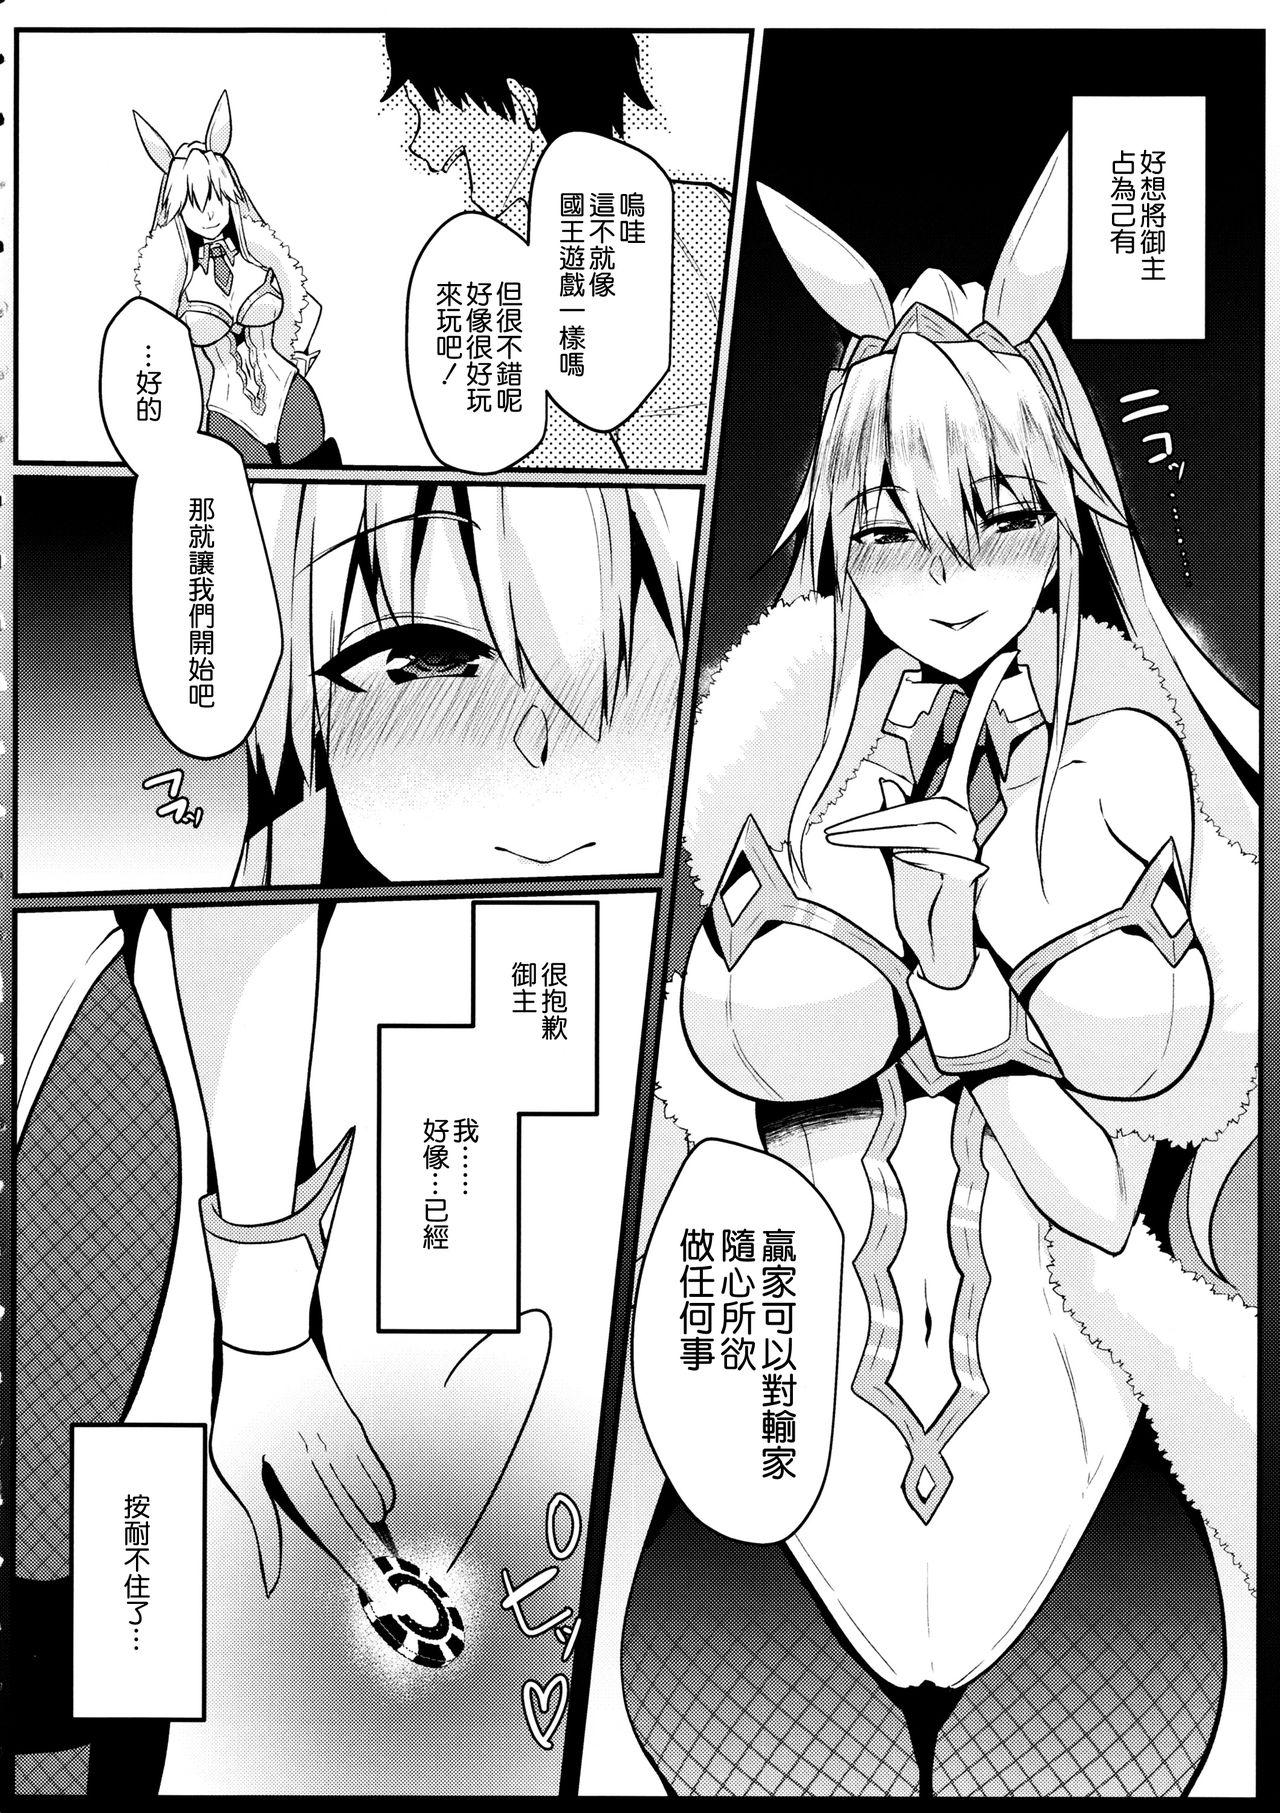 Bunny ni Natta Artoria wa Seiyoku ga Sugoi 5